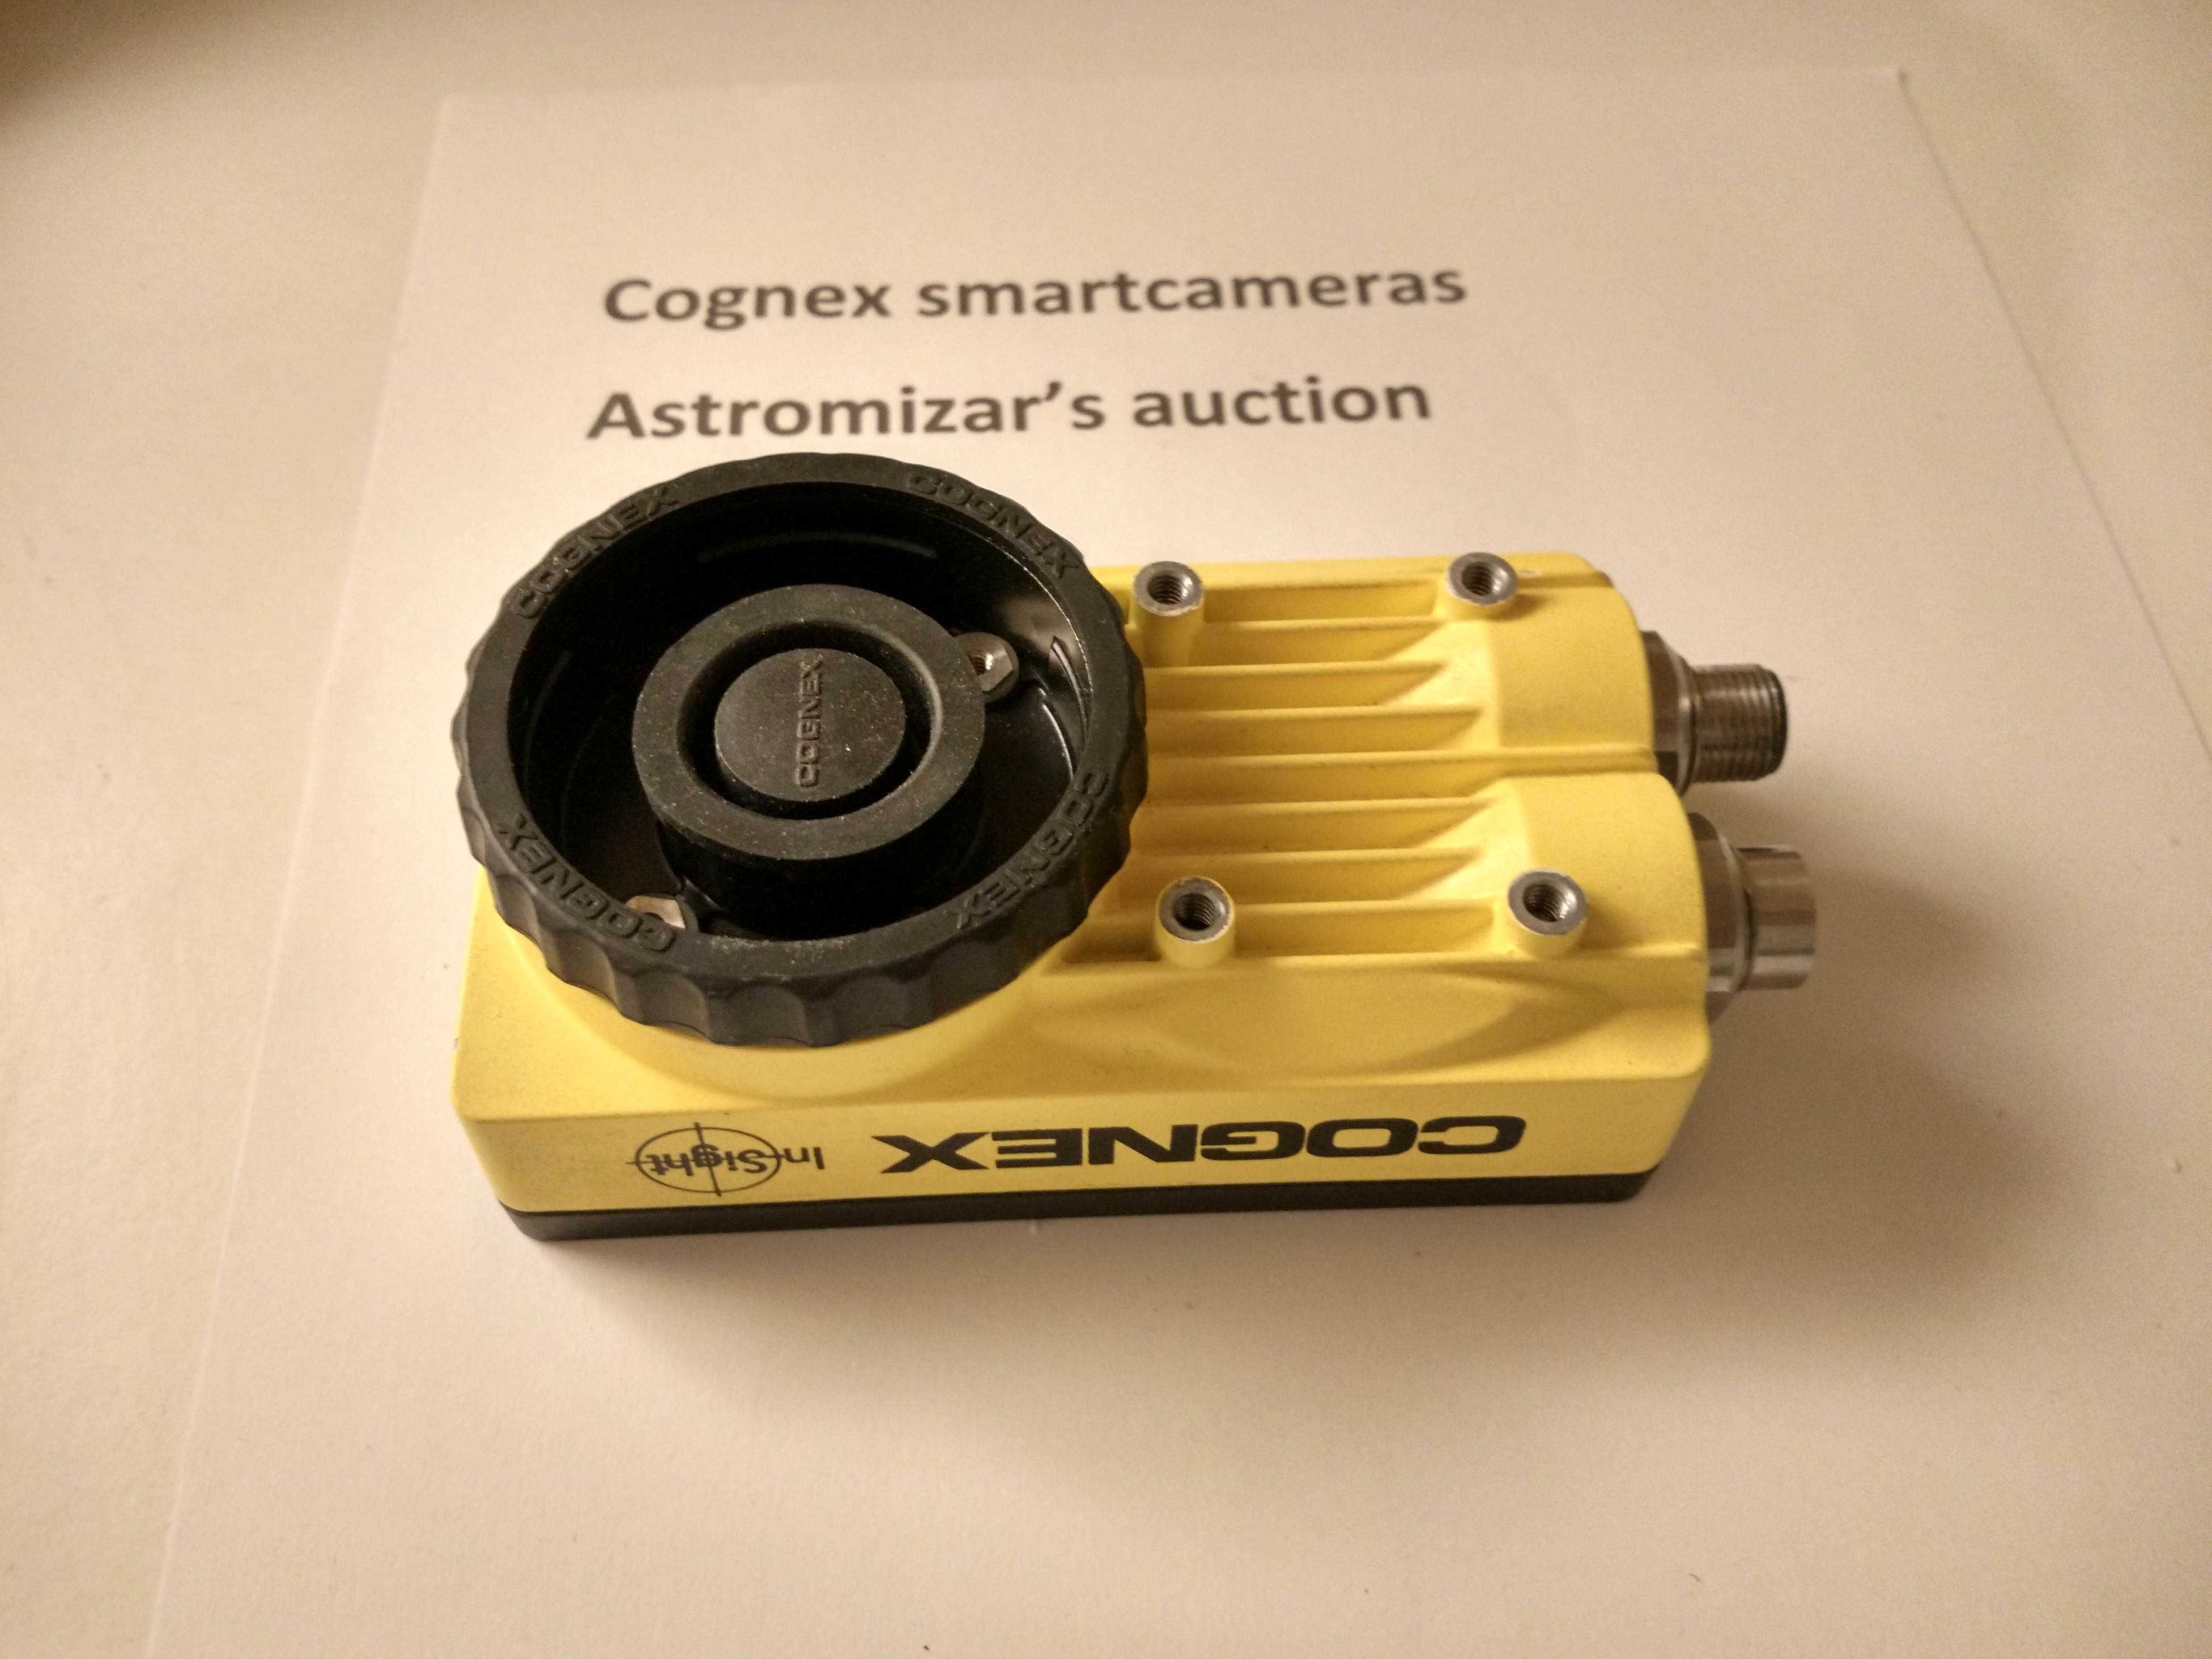 COGNEX In-sight 5110 - Smartcamera Industrial de visão artificial